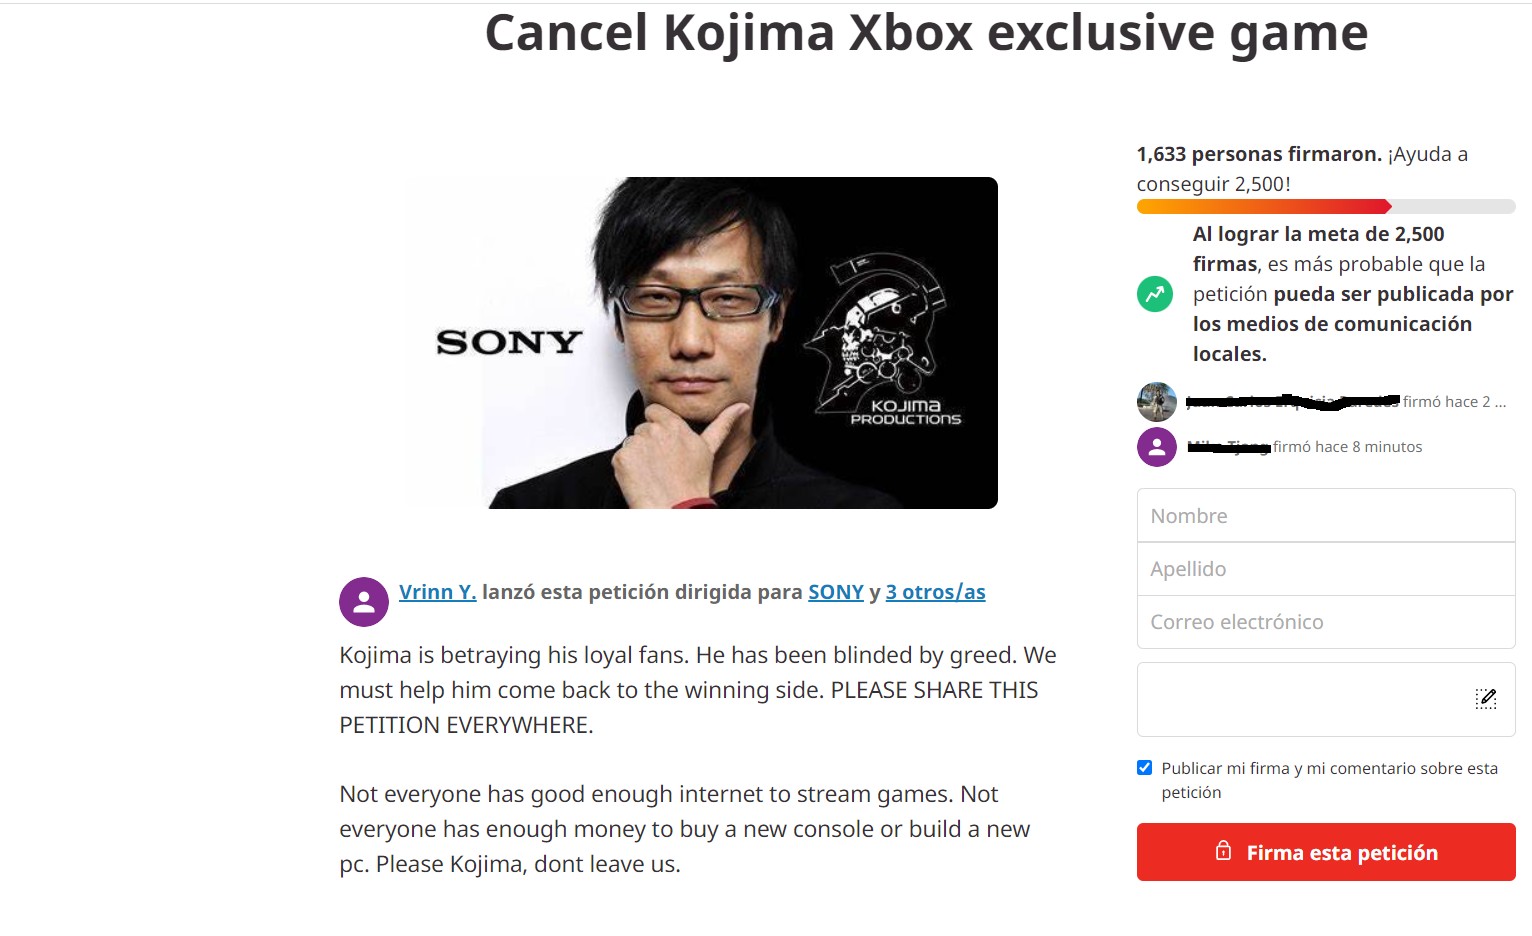 Los fans de Hideo Kojima piden la cancelación de su exclusivo para Xbox 1